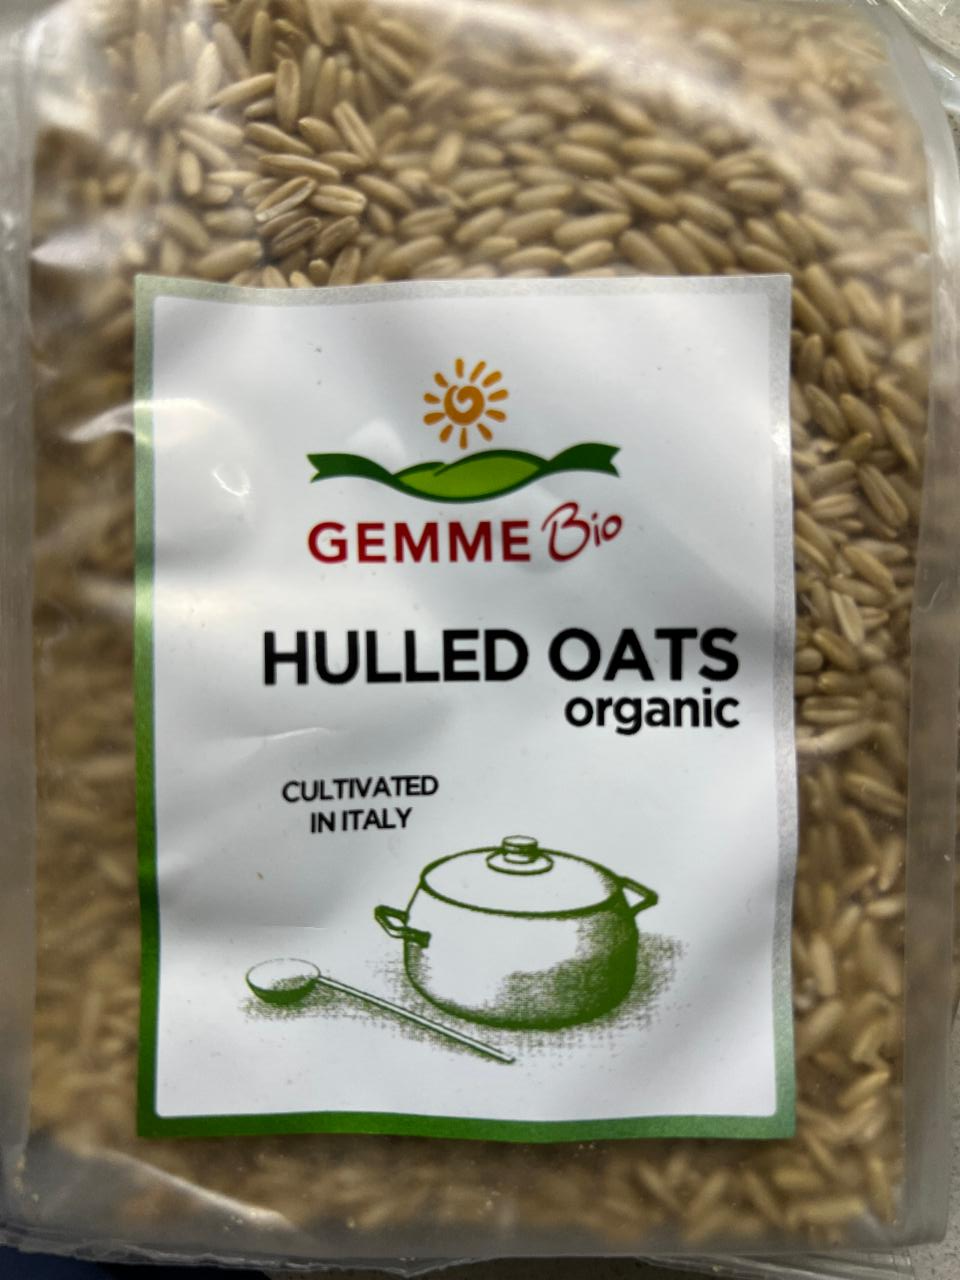 Fotografie - Hulled oats Gemme bio